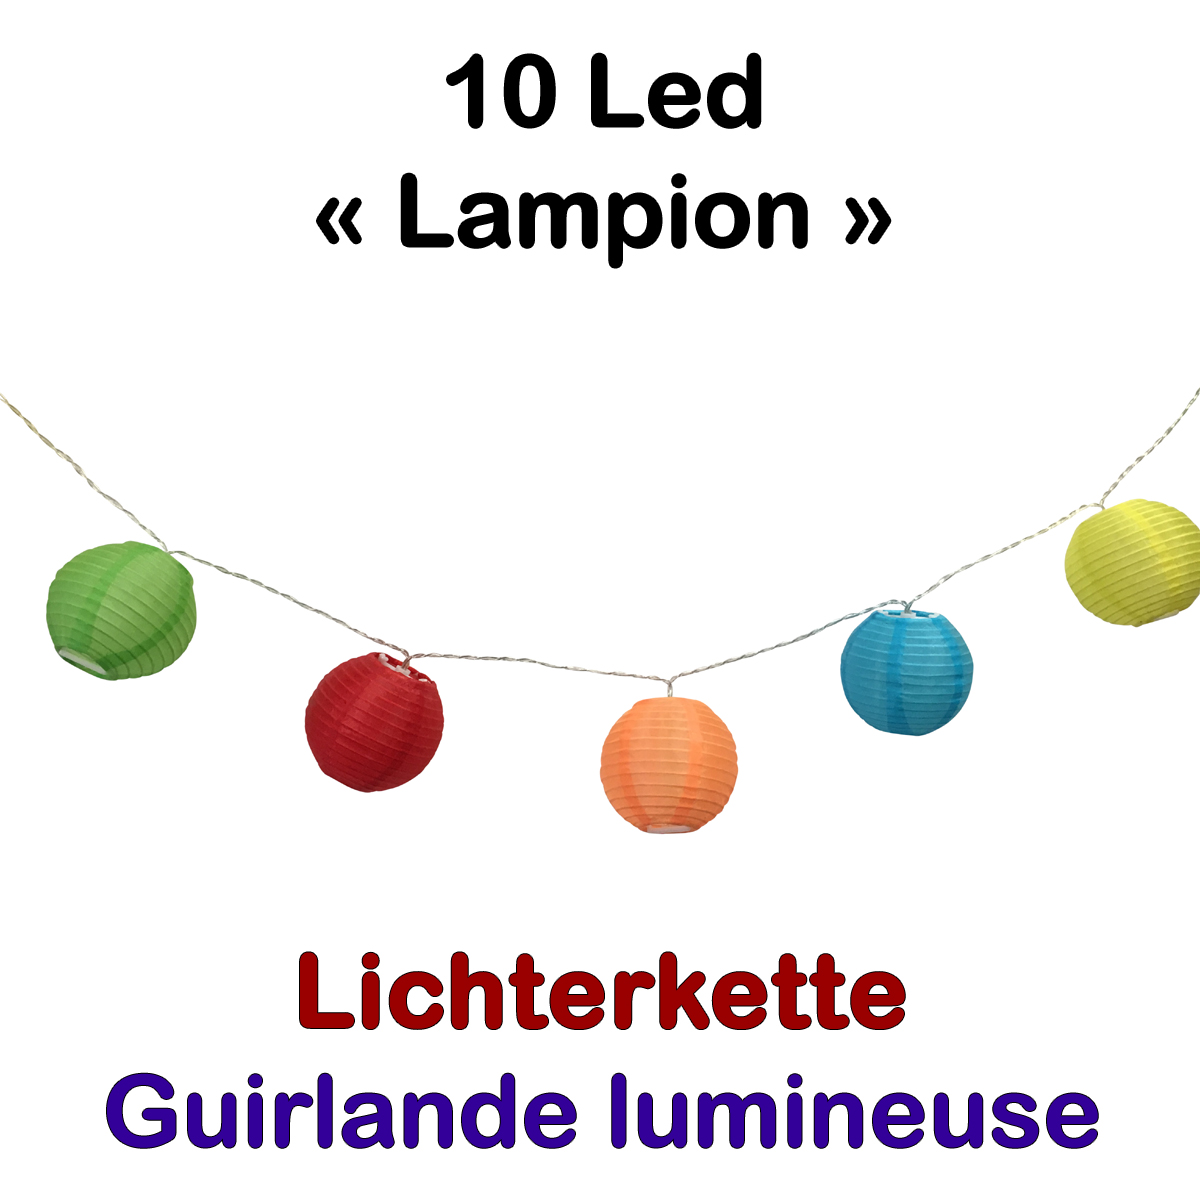 Lichterkette 10 Led Lampions Bunt - Leuchtkette LED für den Aussenbereich mit Batterie und Timer